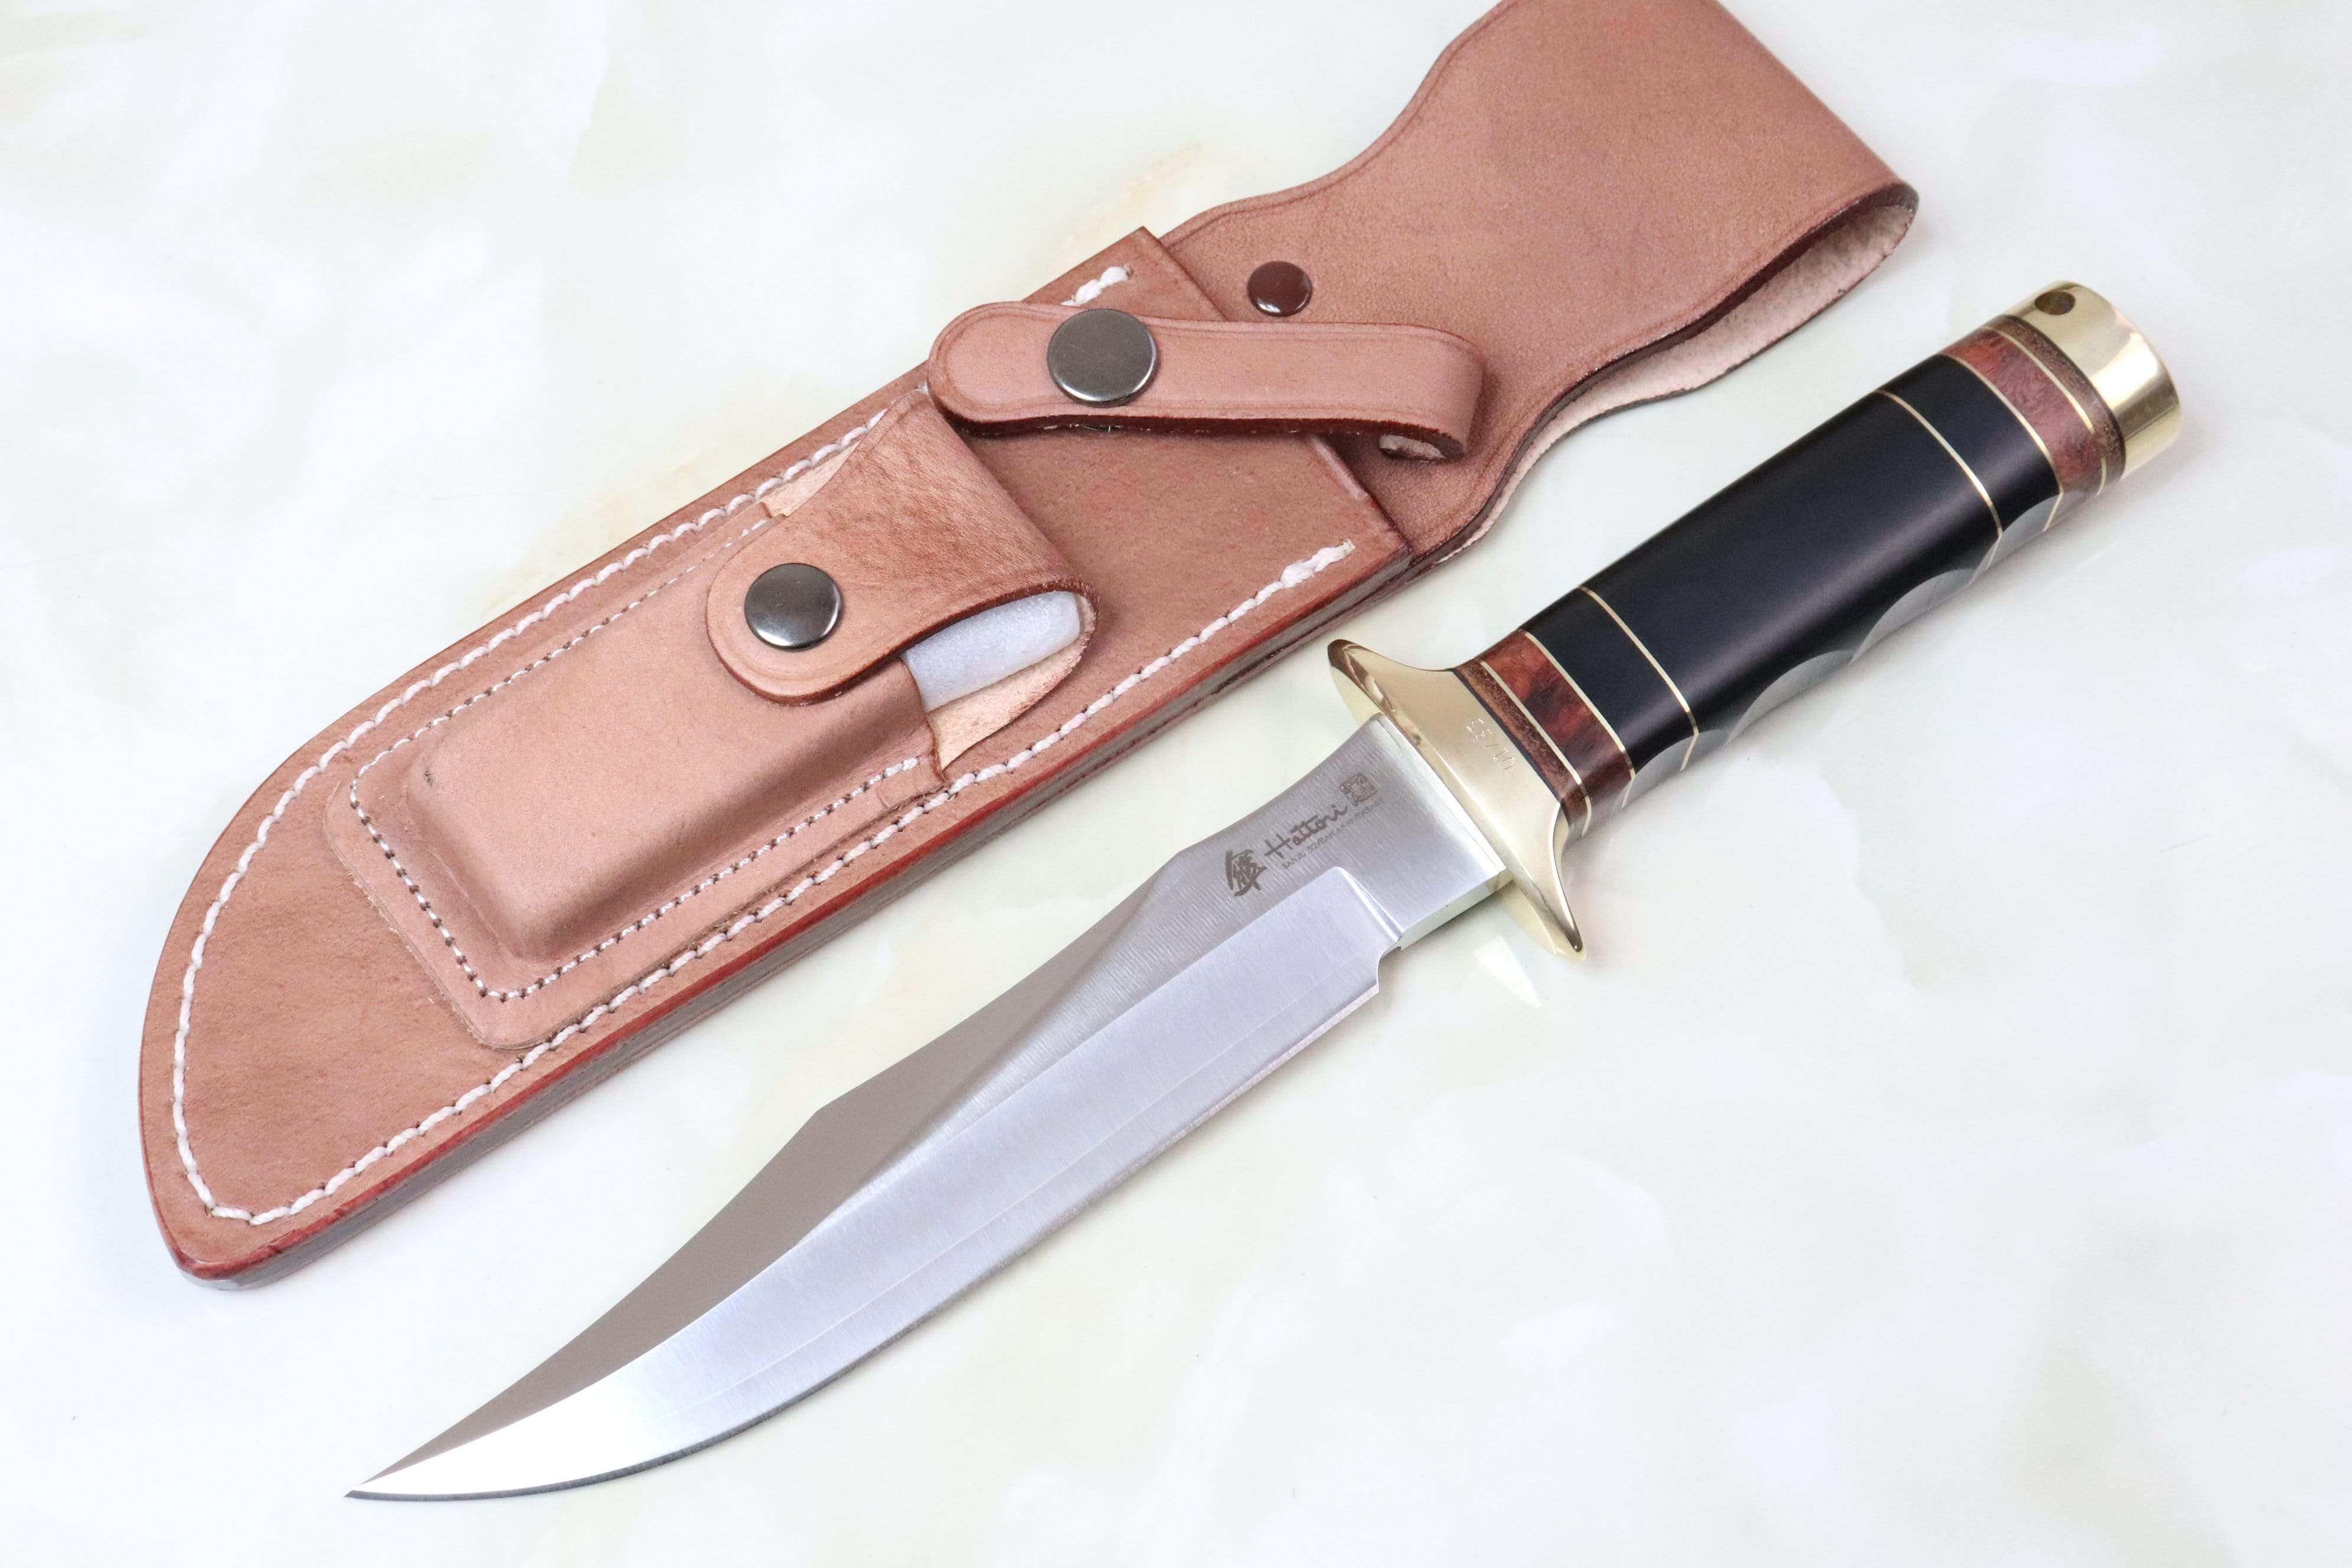 Hattori 傘 SAN Limited Edition SAN-31 S.O.G. Bowie Knife, “Hattori 